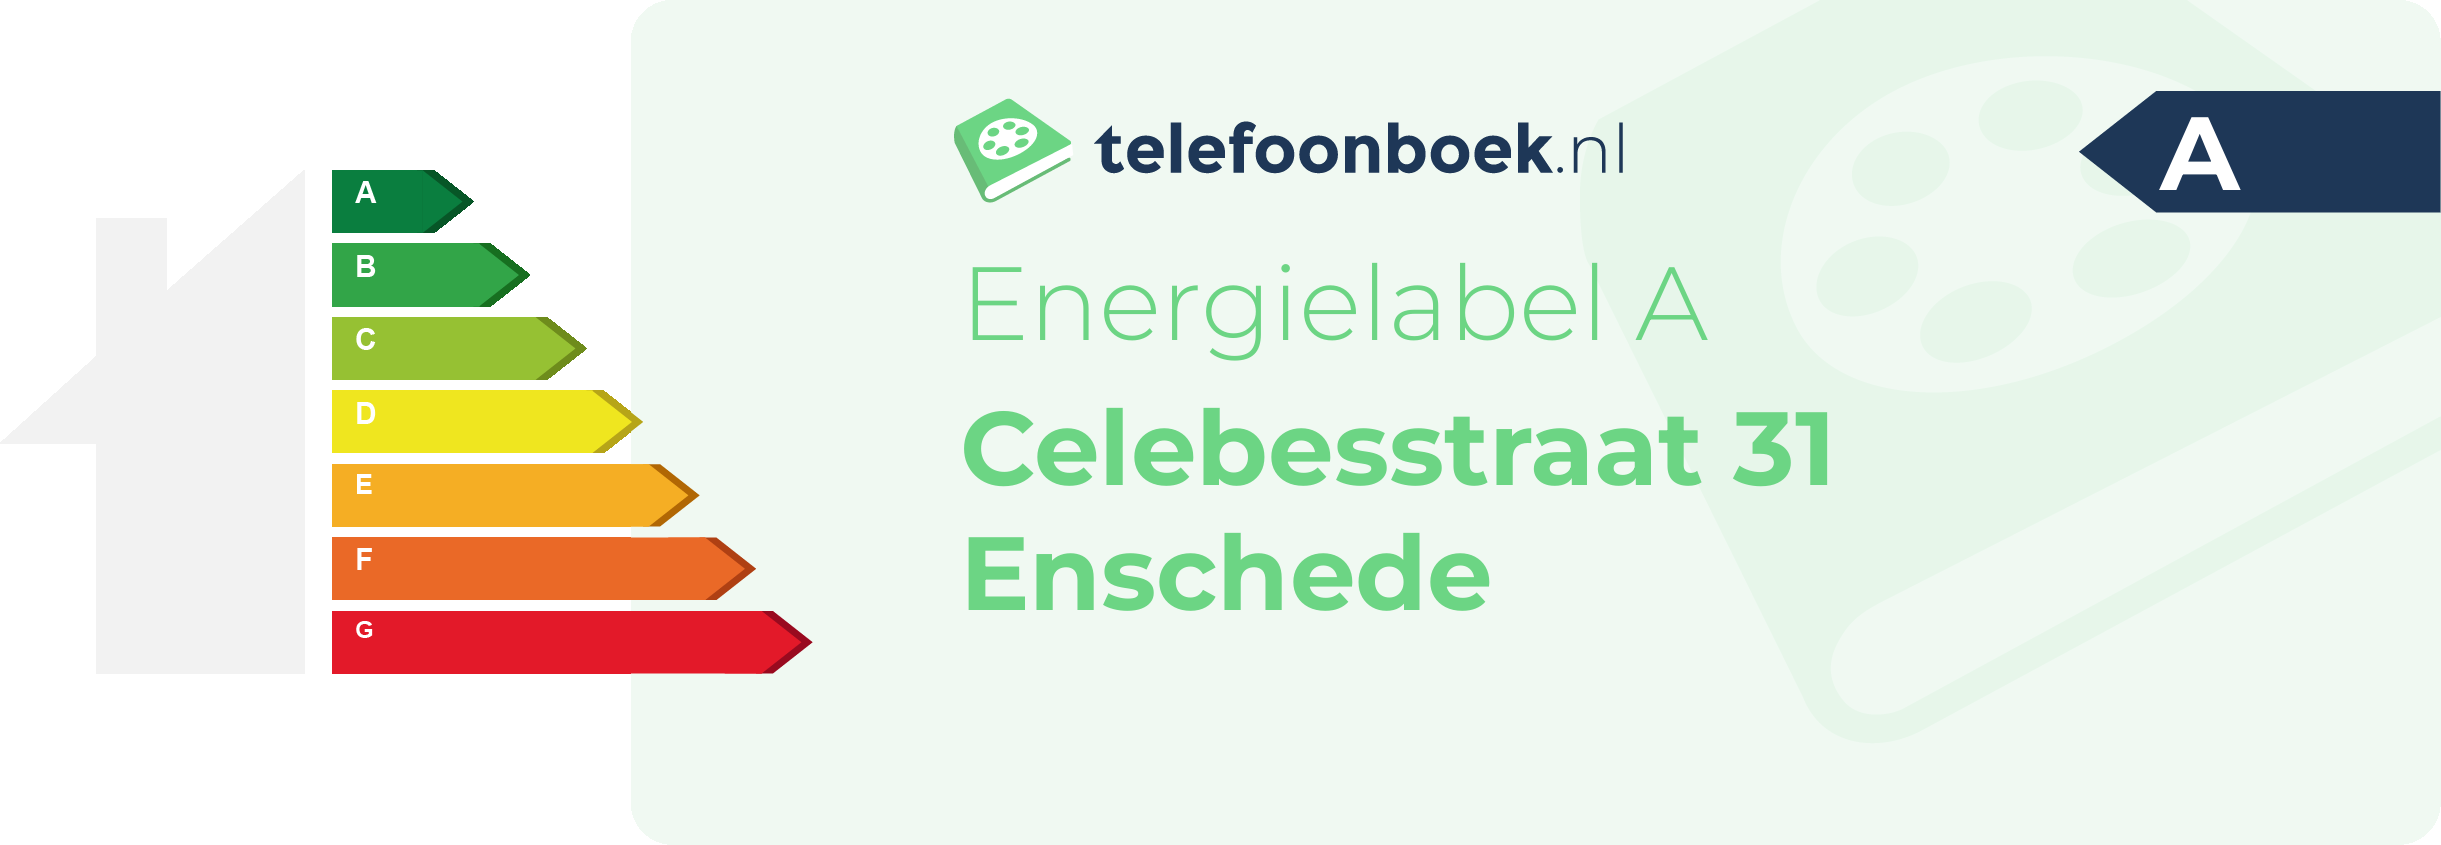 Energielabel Celebesstraat 31 Enschede